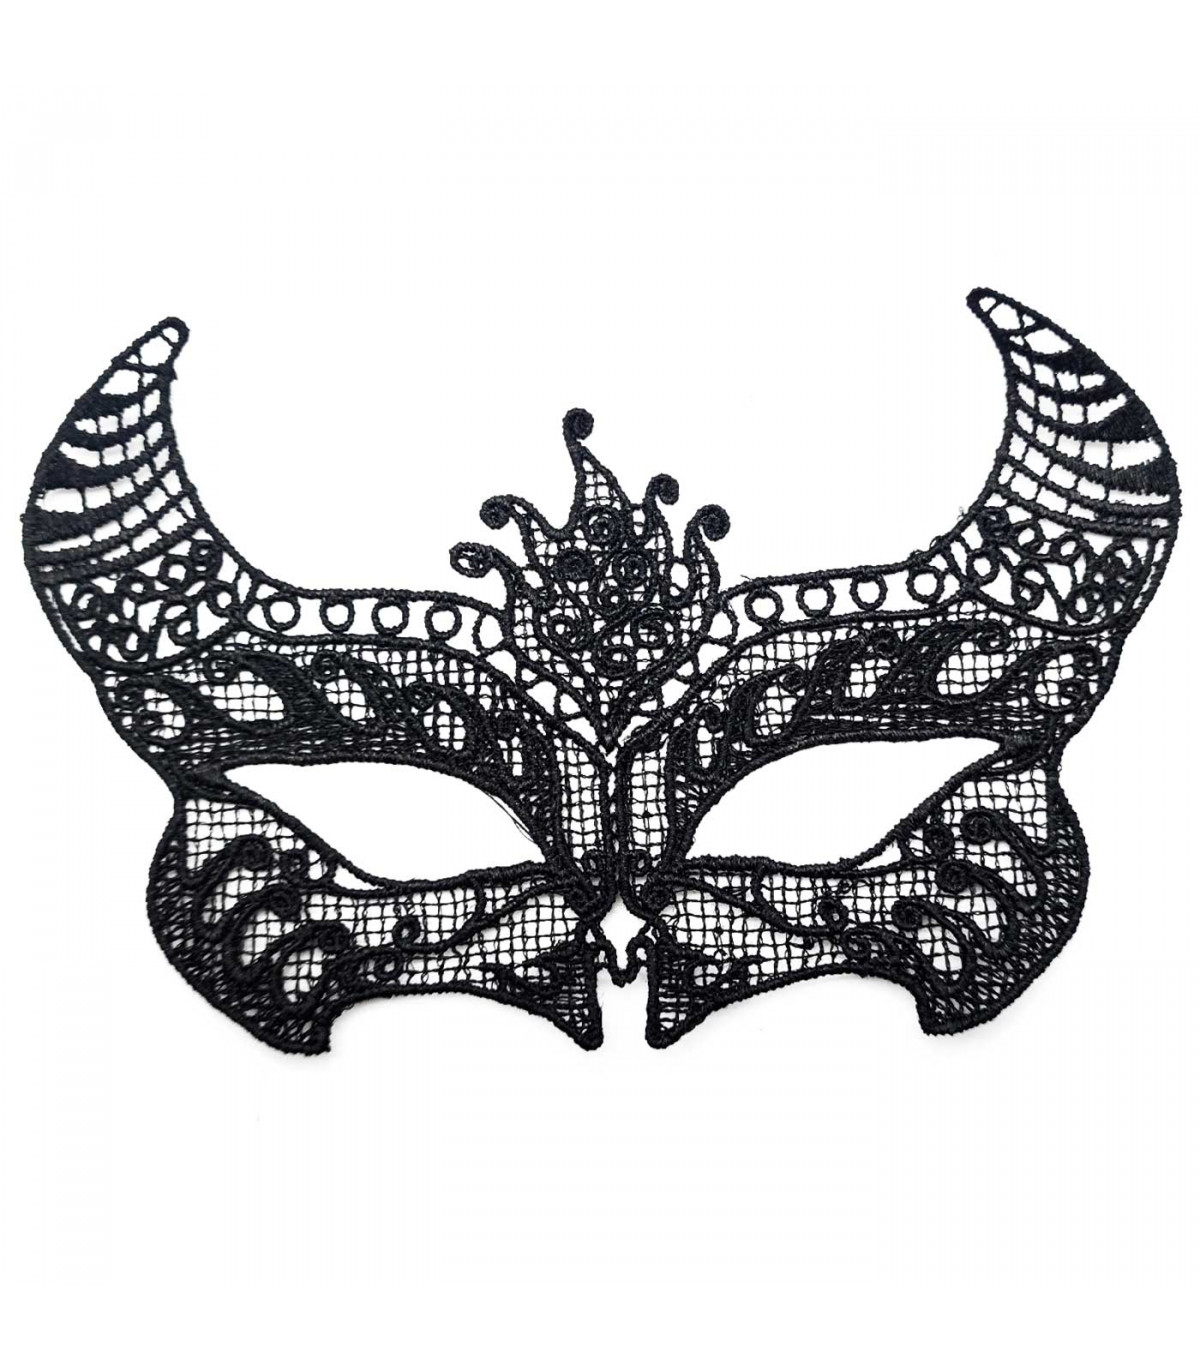 Tradineur - Antifaz con encaje de diablo - Complemento para carnaval,  Halloween y celebraciones. - Color Negro - 13 x 20 cm